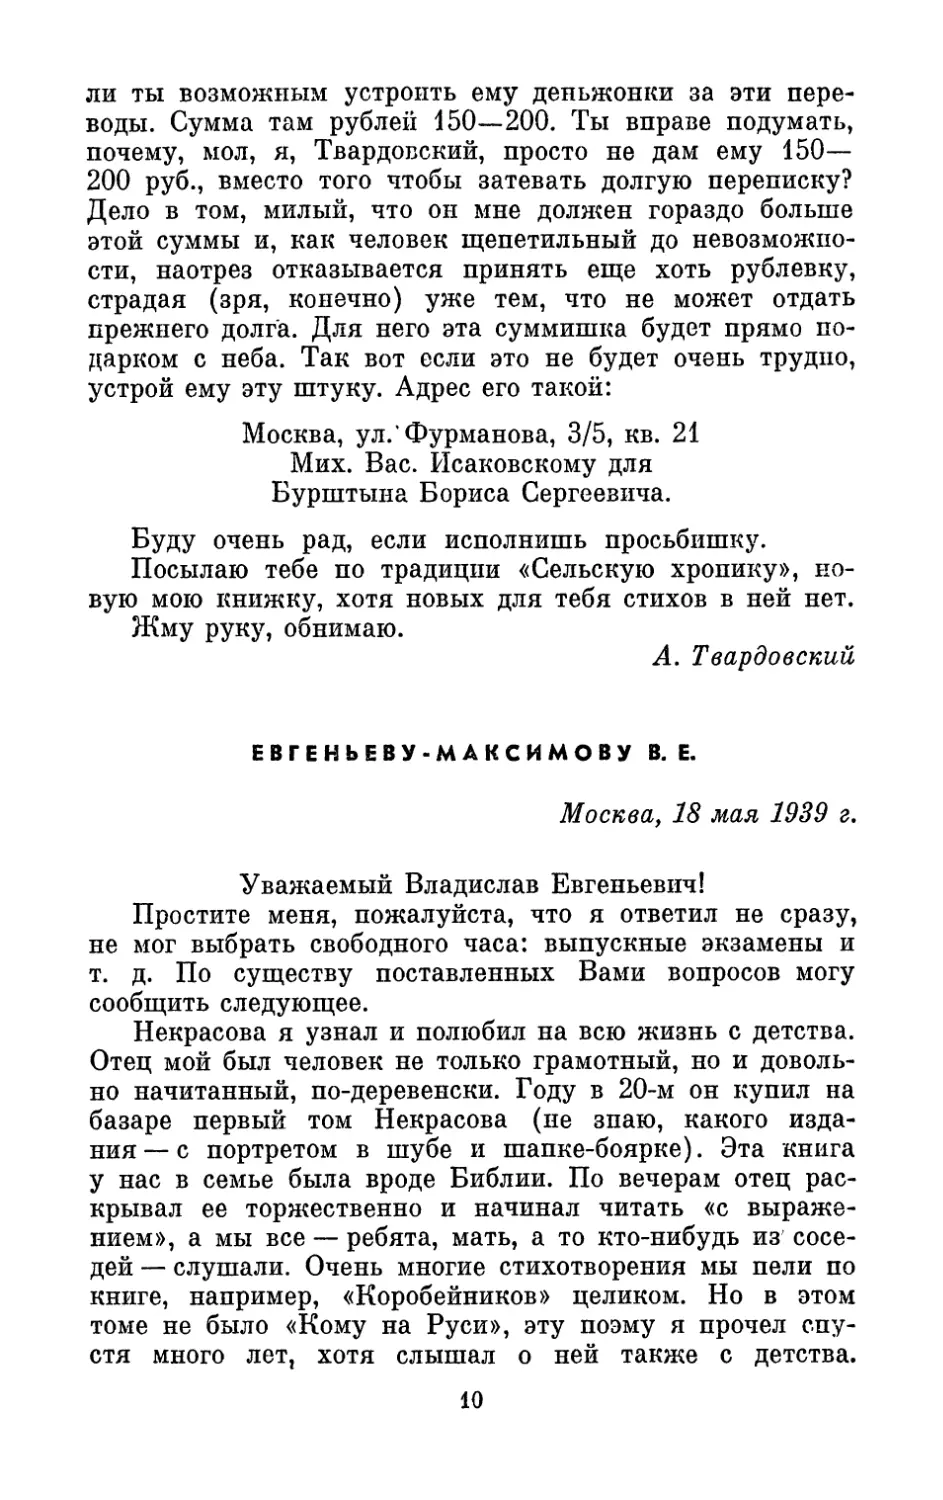 Евгеньеву-Максимову В. Е., 18 мая 1939 г.